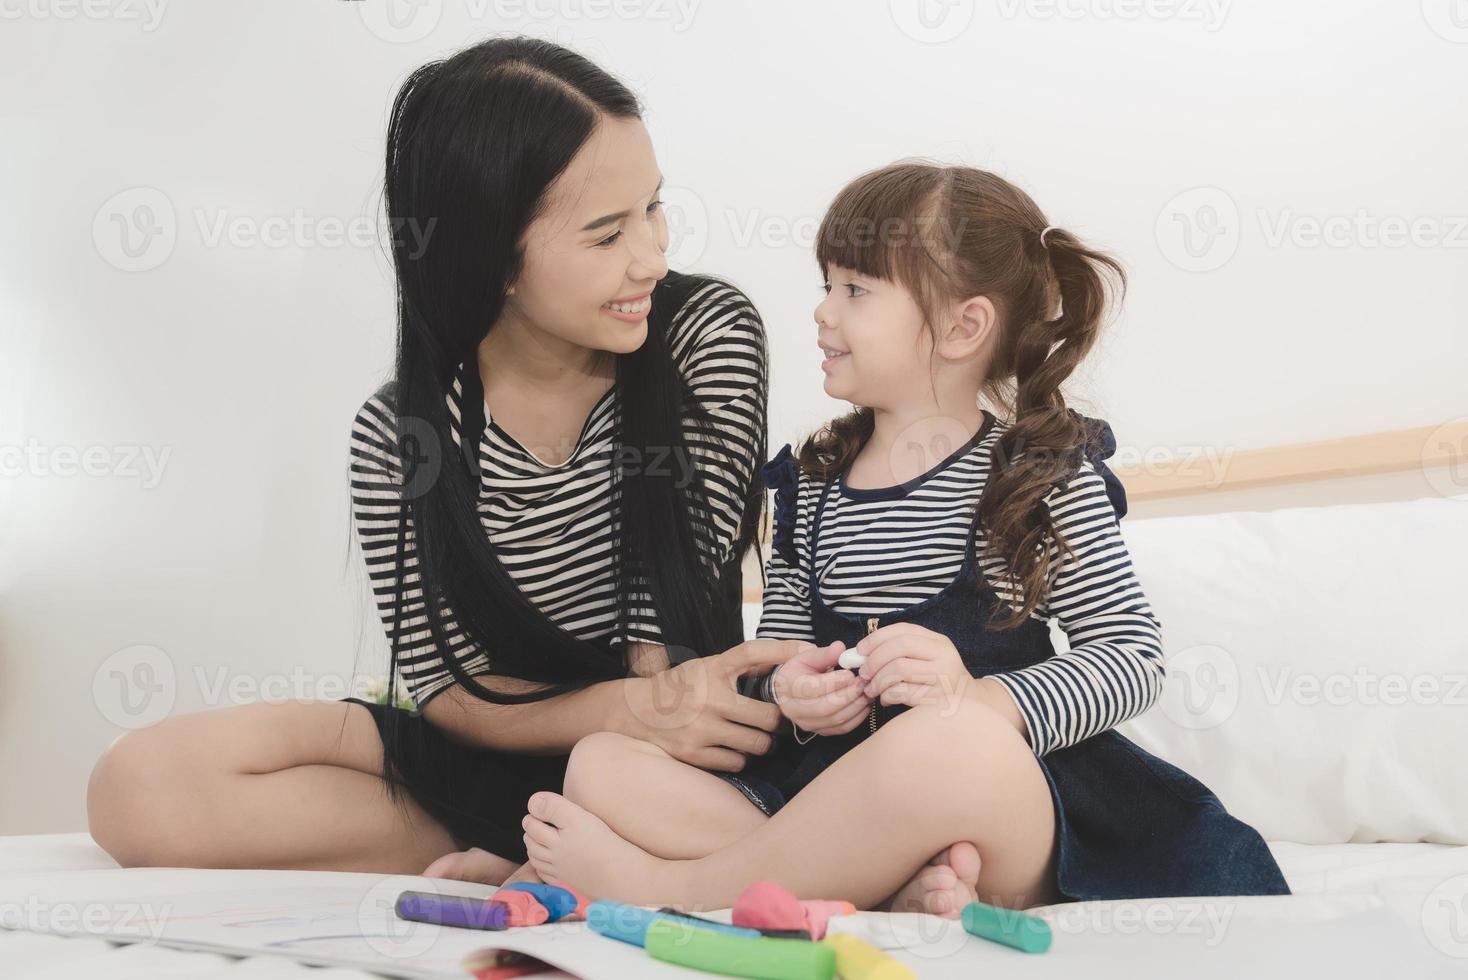 familia amorosa feliz, madre joven asiática jugando con su hija en la habitación de los niños. diseño de fotos para la familia, los niños y el concepto de gente feliz.